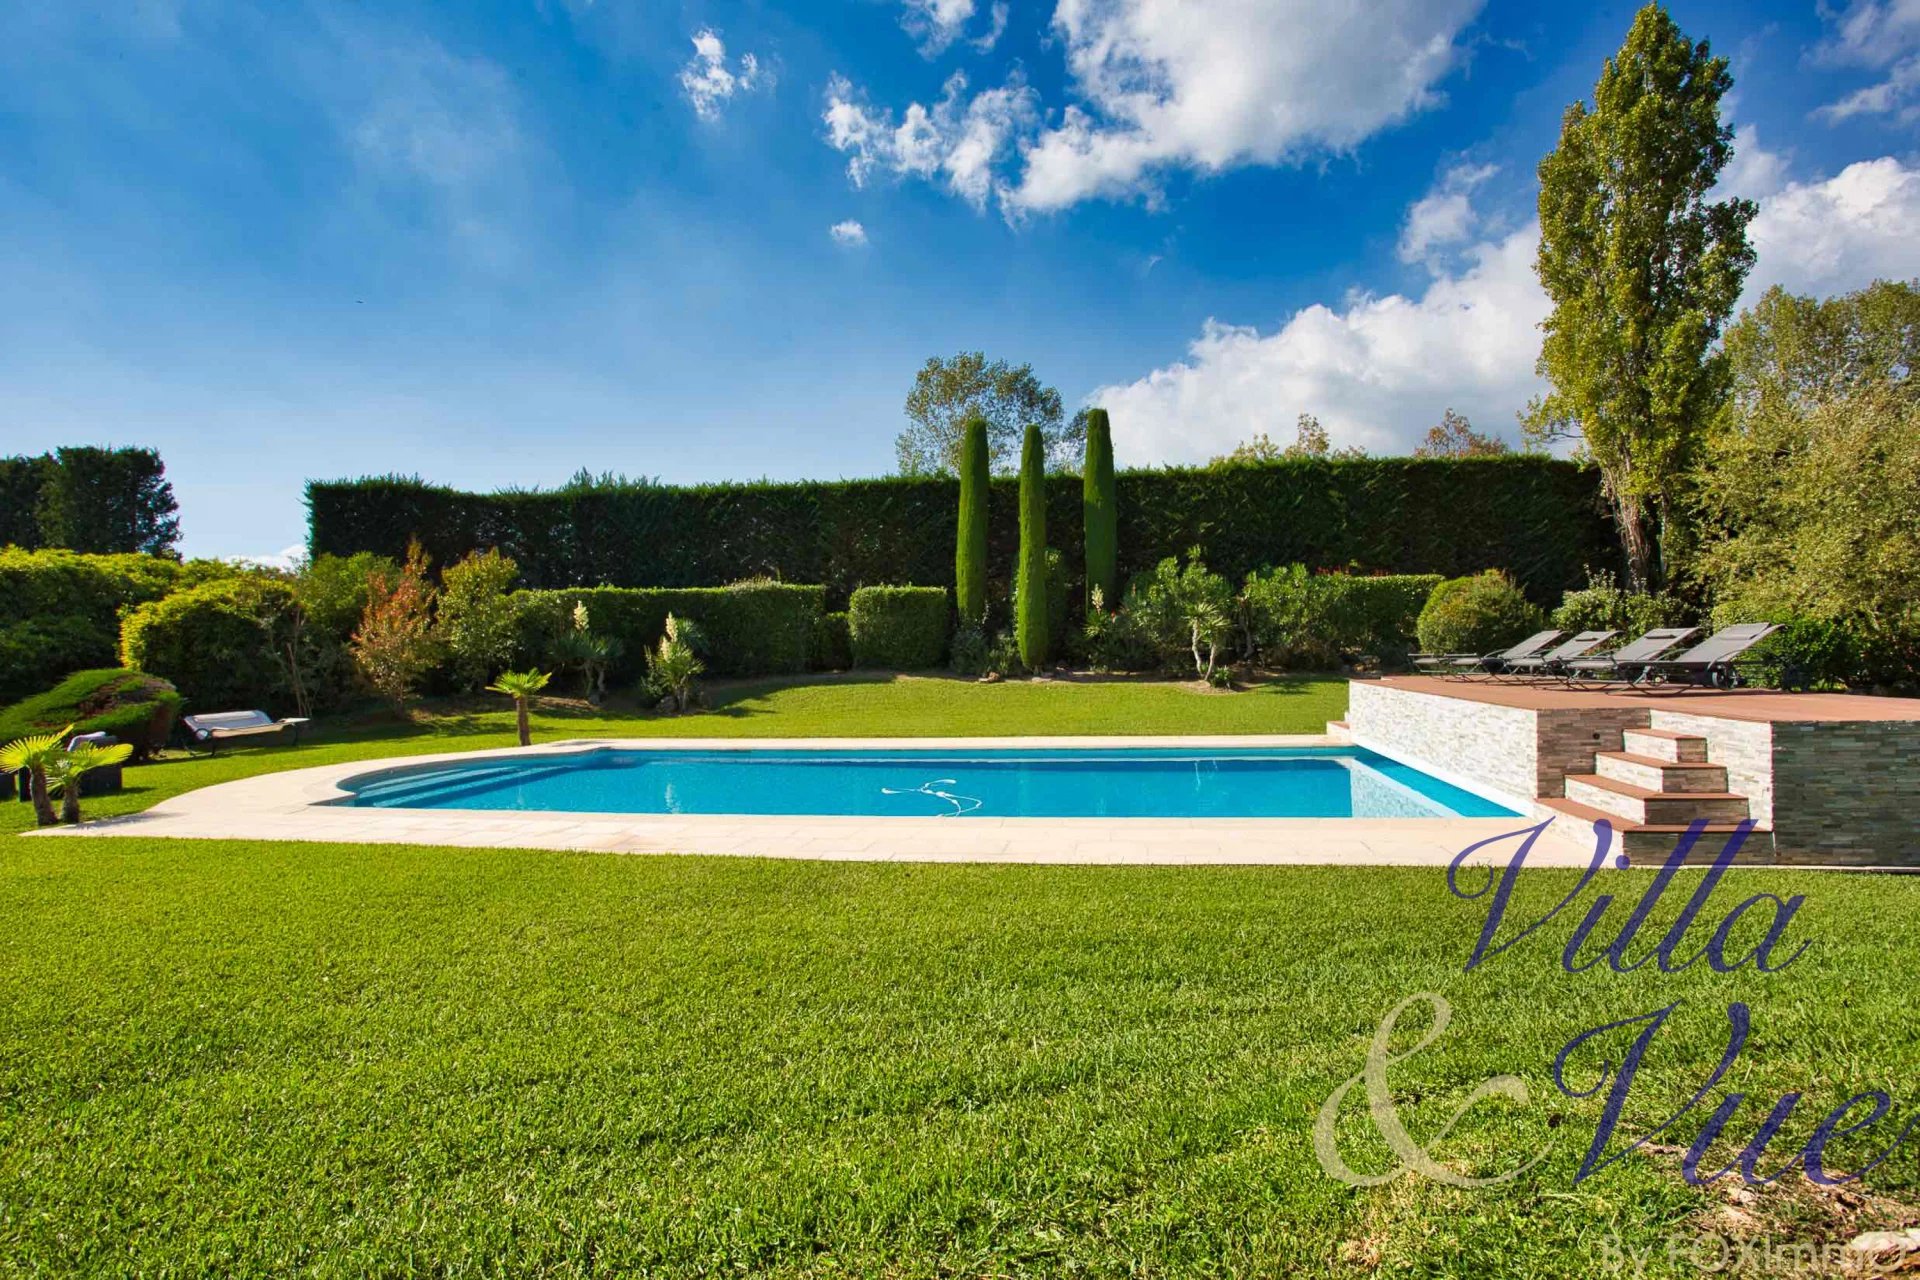 Chateauneuf, Magnifique Bastide, 280m2, 5 chambres, dépendance, 5000m2 de terrain plat et paysager, piscine, triple garage